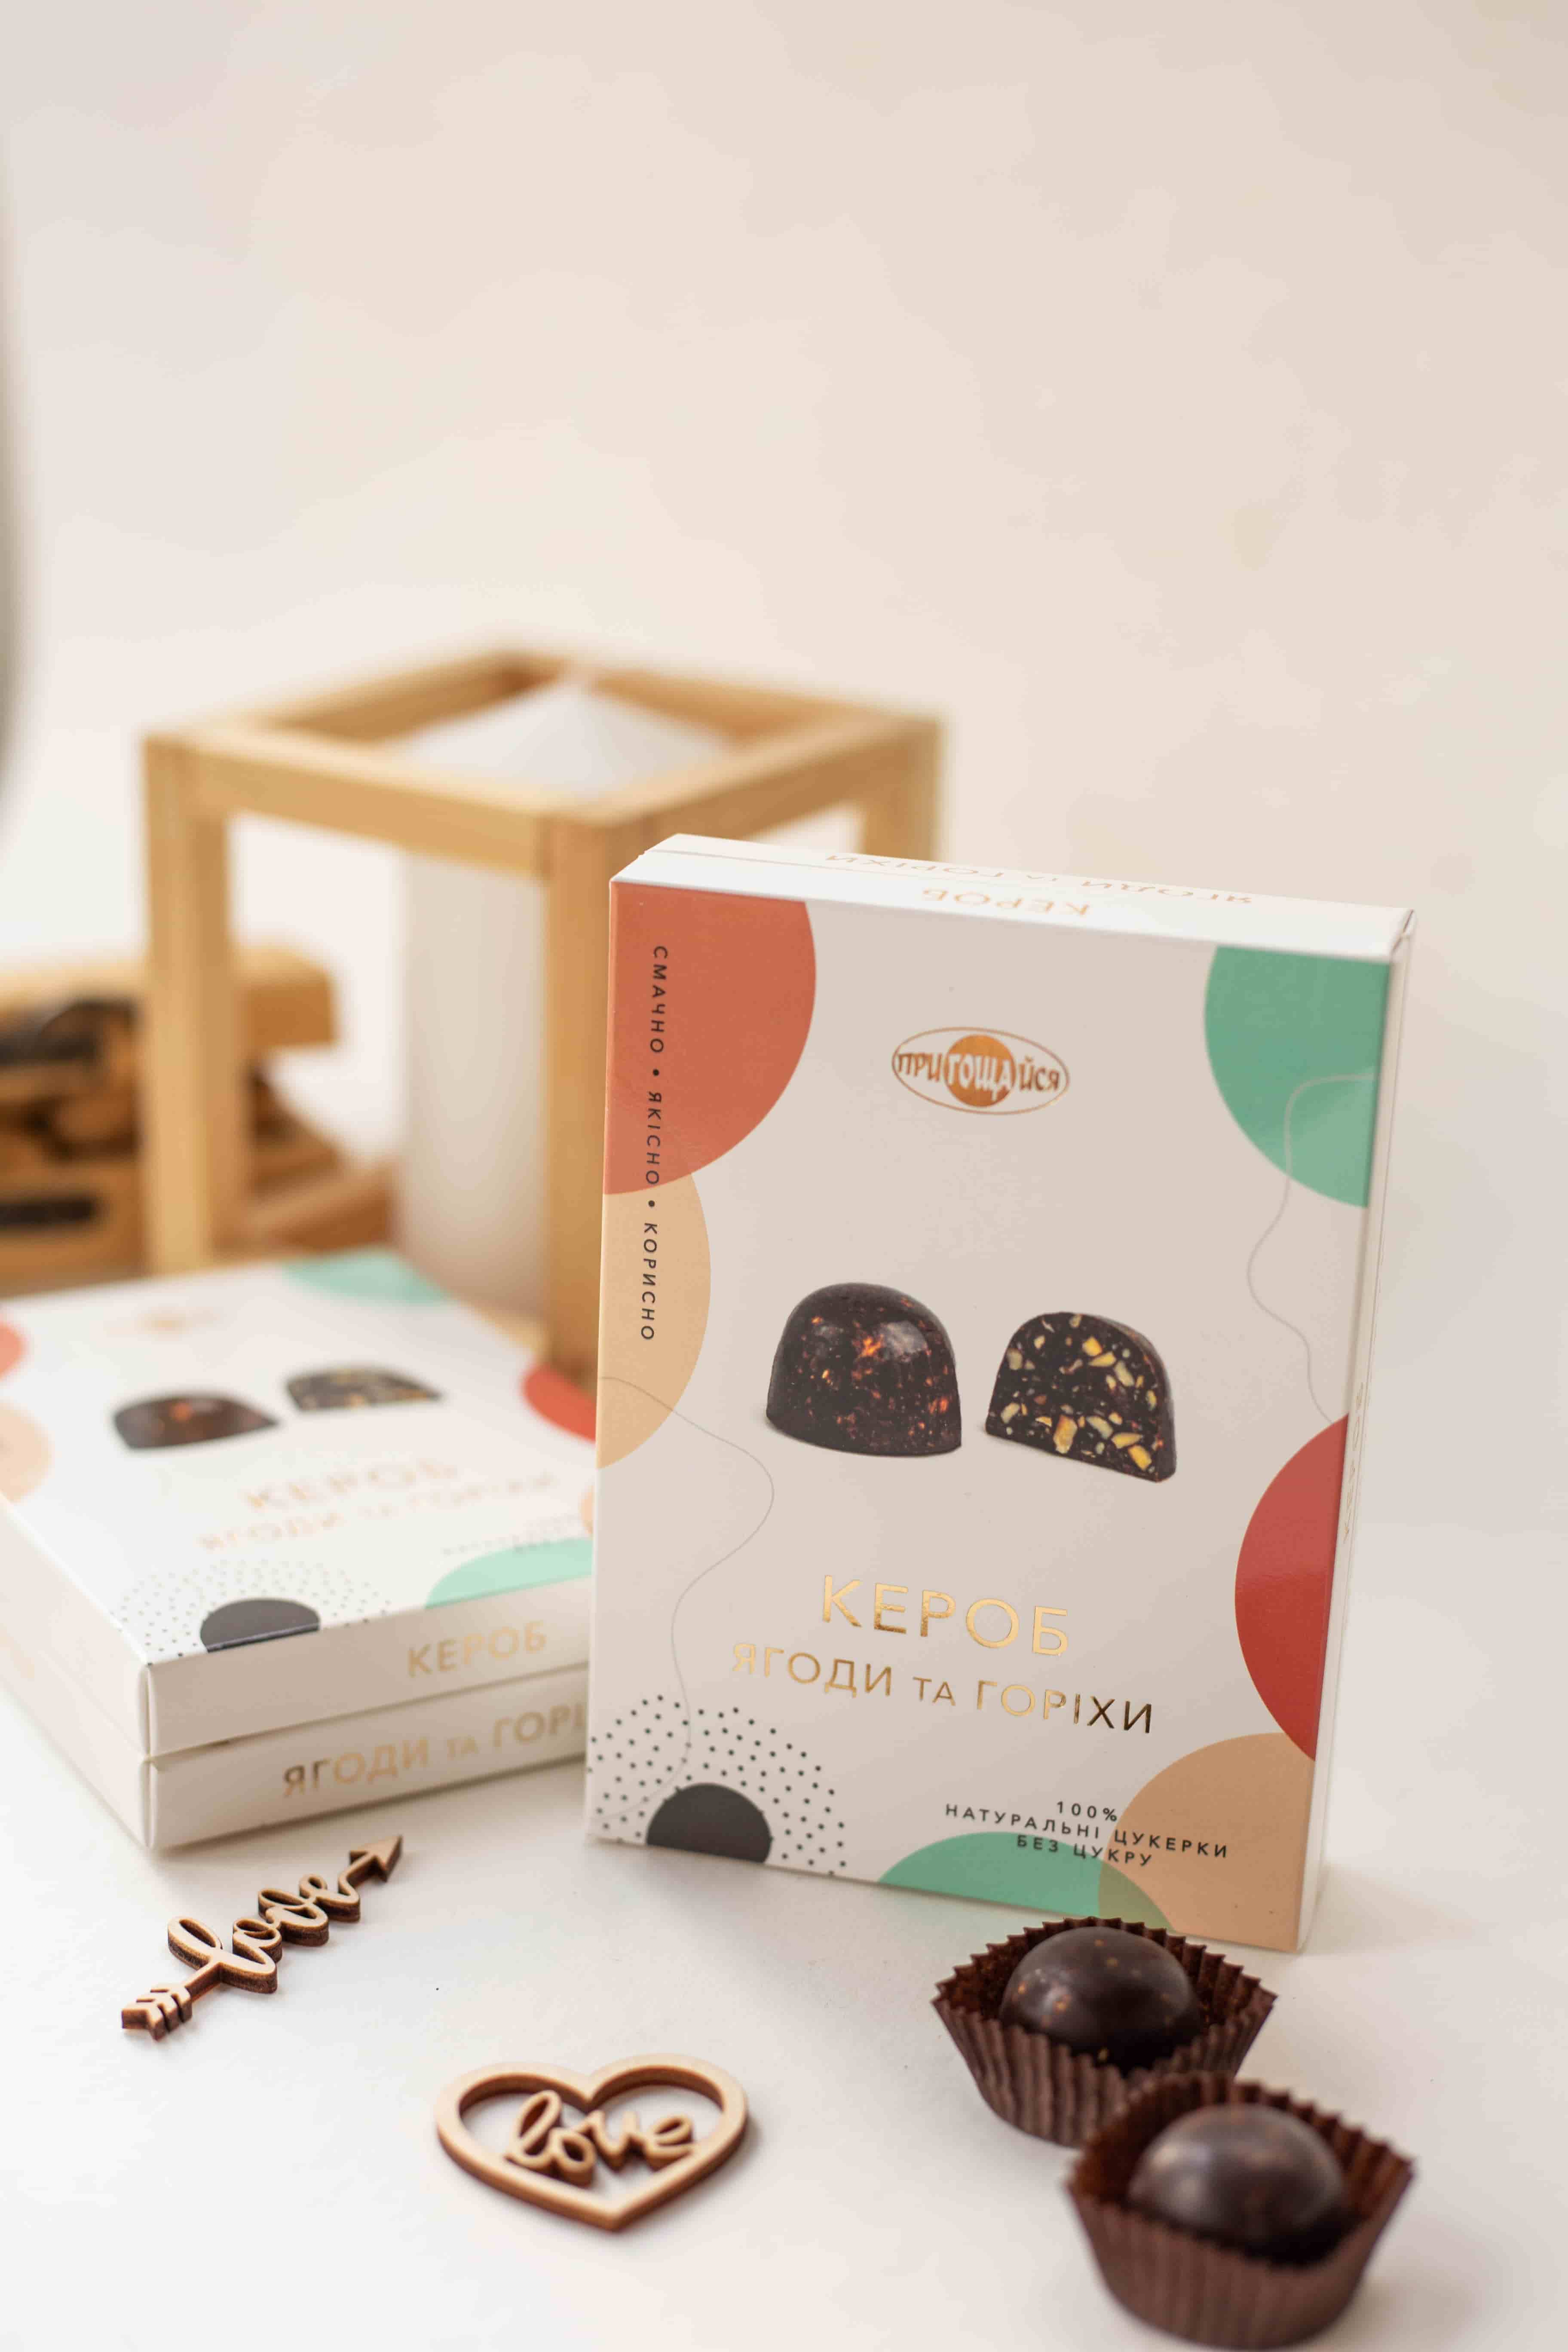 Разработка дизайна упаковки бренда Живые конфеты